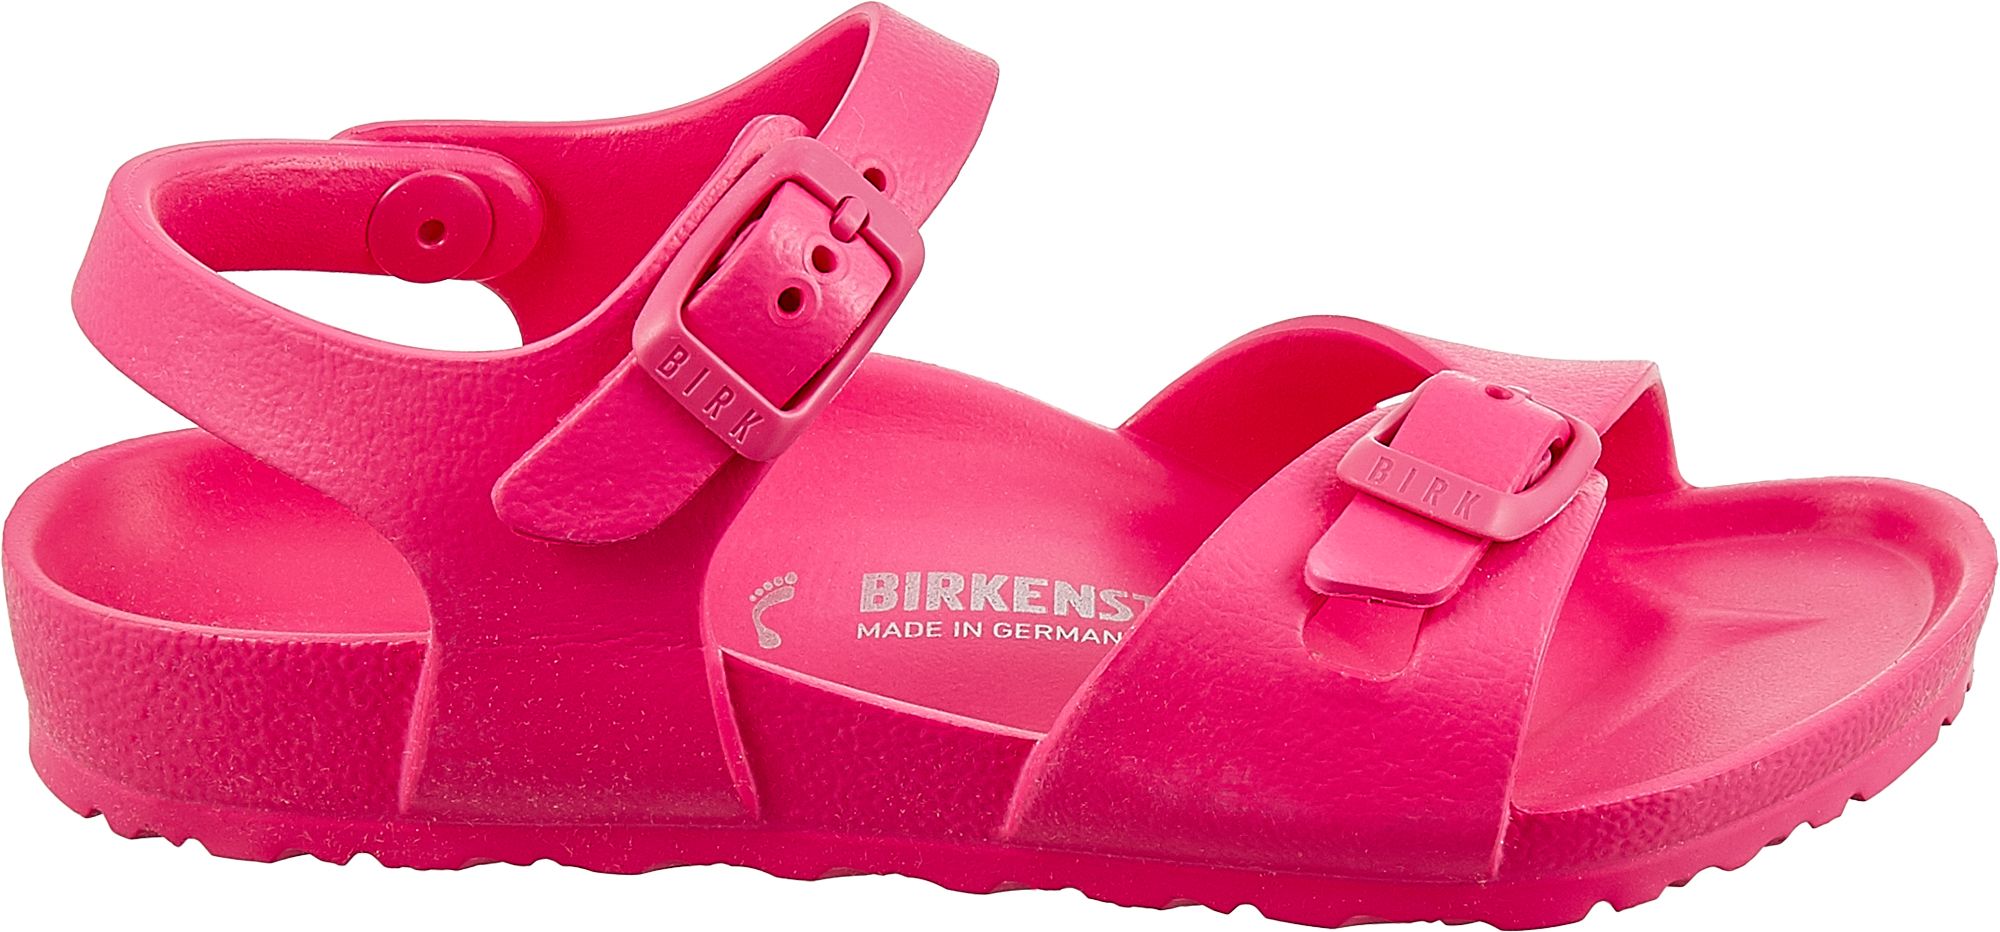 birkenstock sandals kids